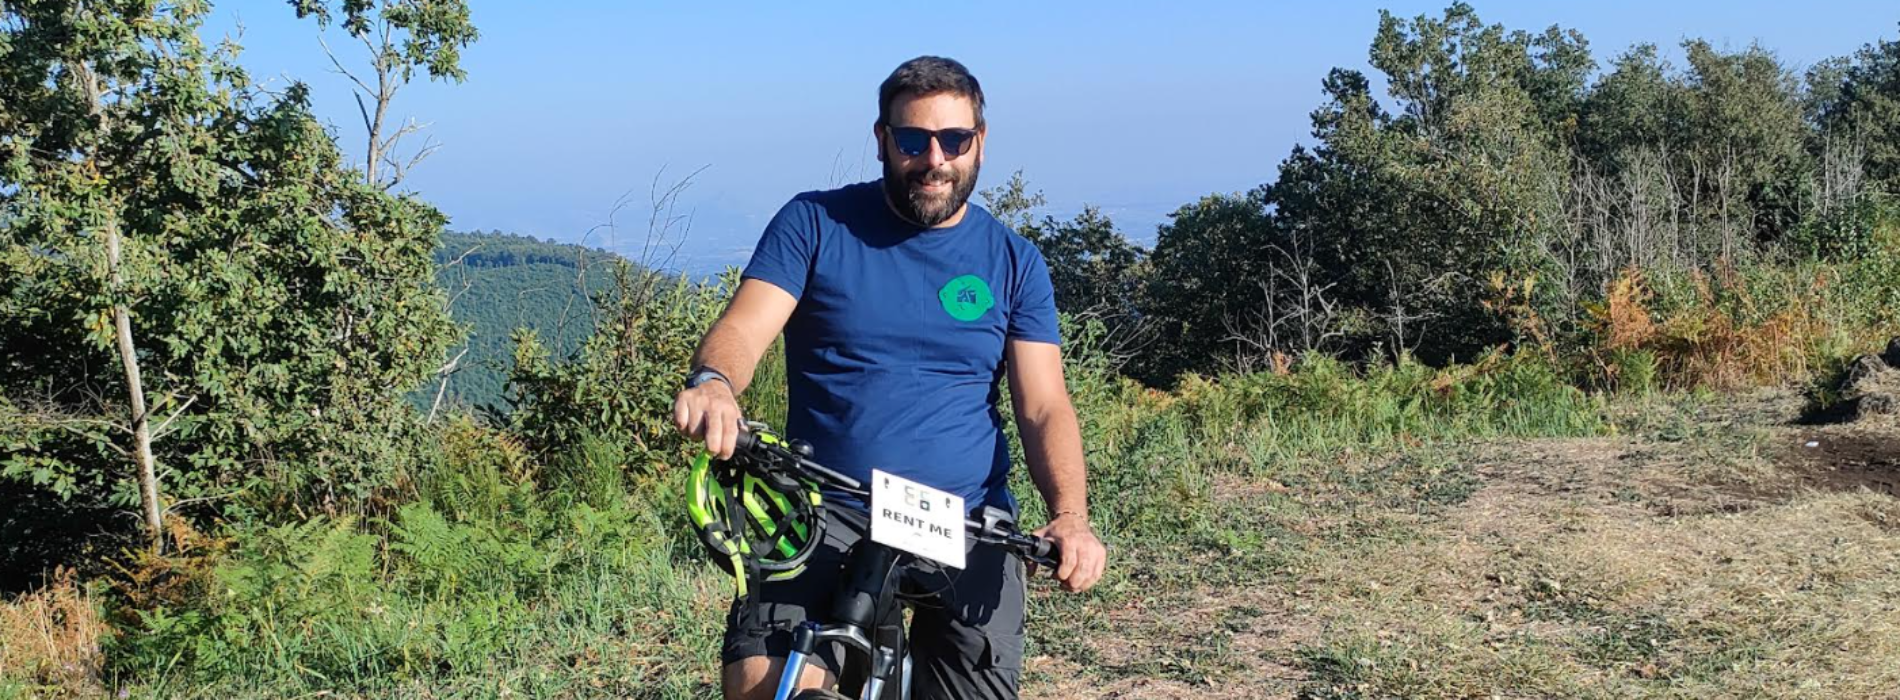 Ciccio bike tour, dal Sannio a Roccamonfina alla scoperta del territorio